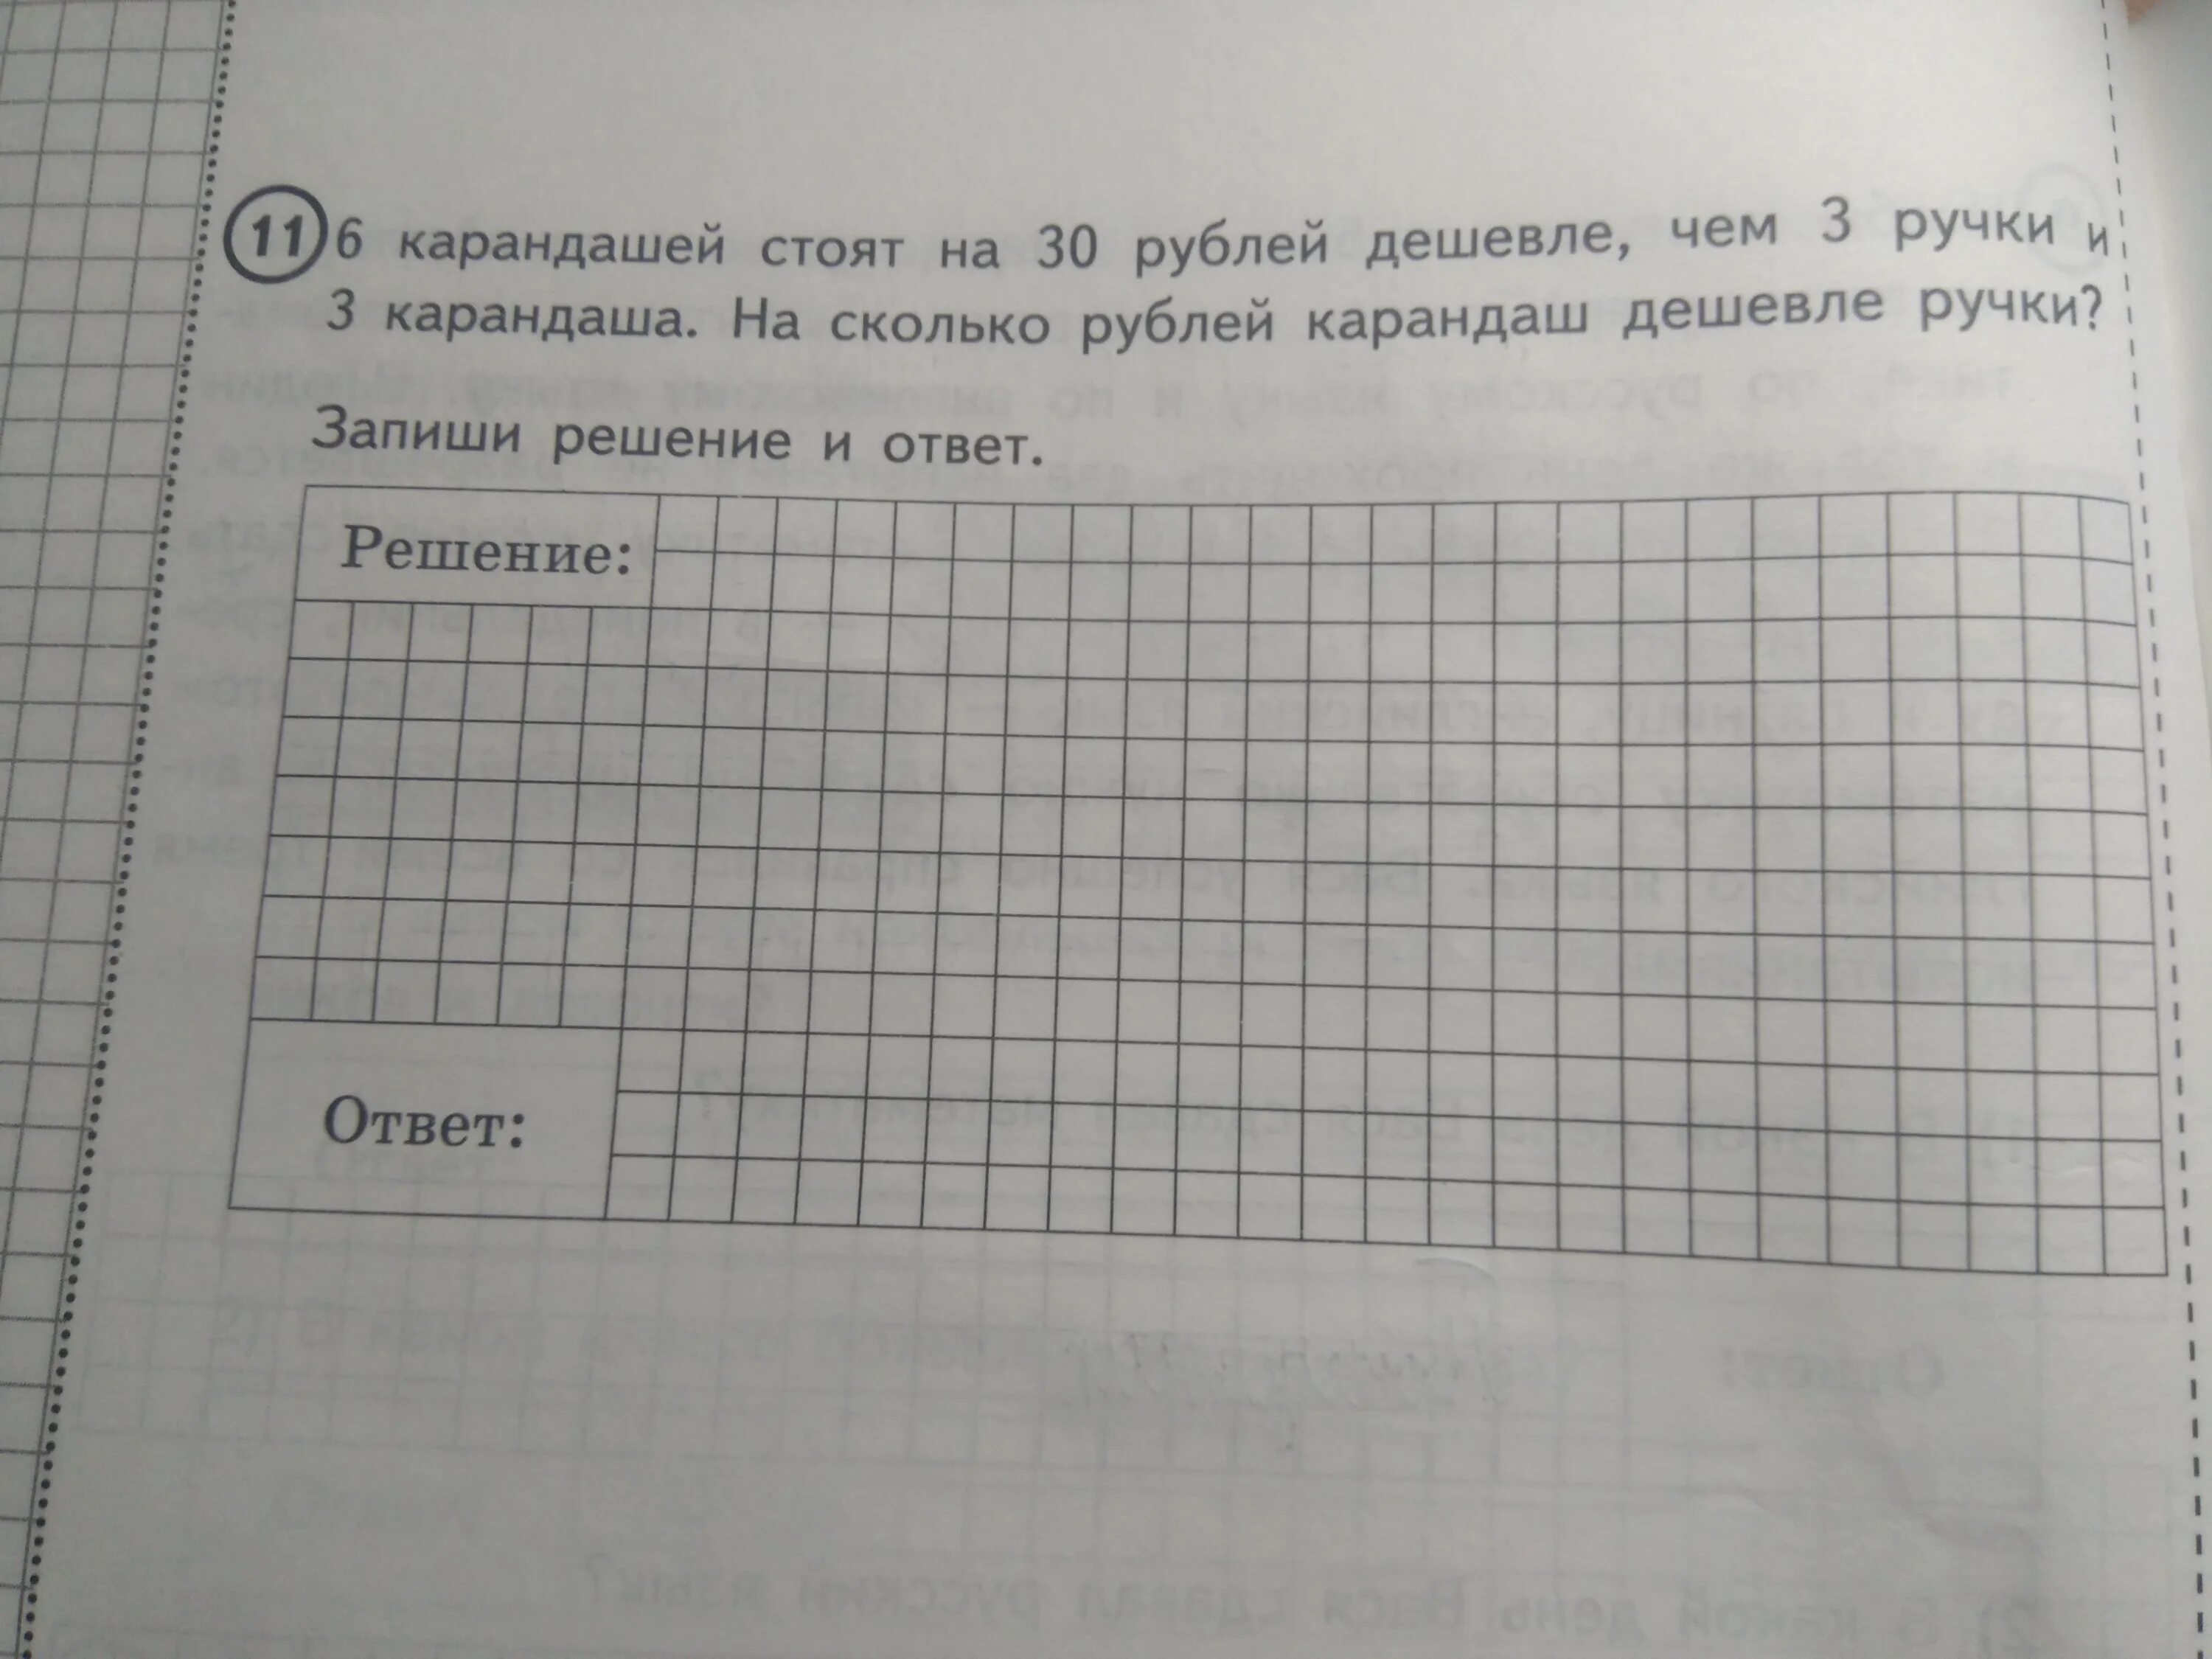 Цена карандаша 6 рублей сколько. 6 Карандашей стоят на 30 рублей. Карандаш дешевле ручки на 2 рубля. Решение задачи 6 карандашей. 6 Карандашей стоят на 30 рублей дешевле чем 3 ручки и 3.